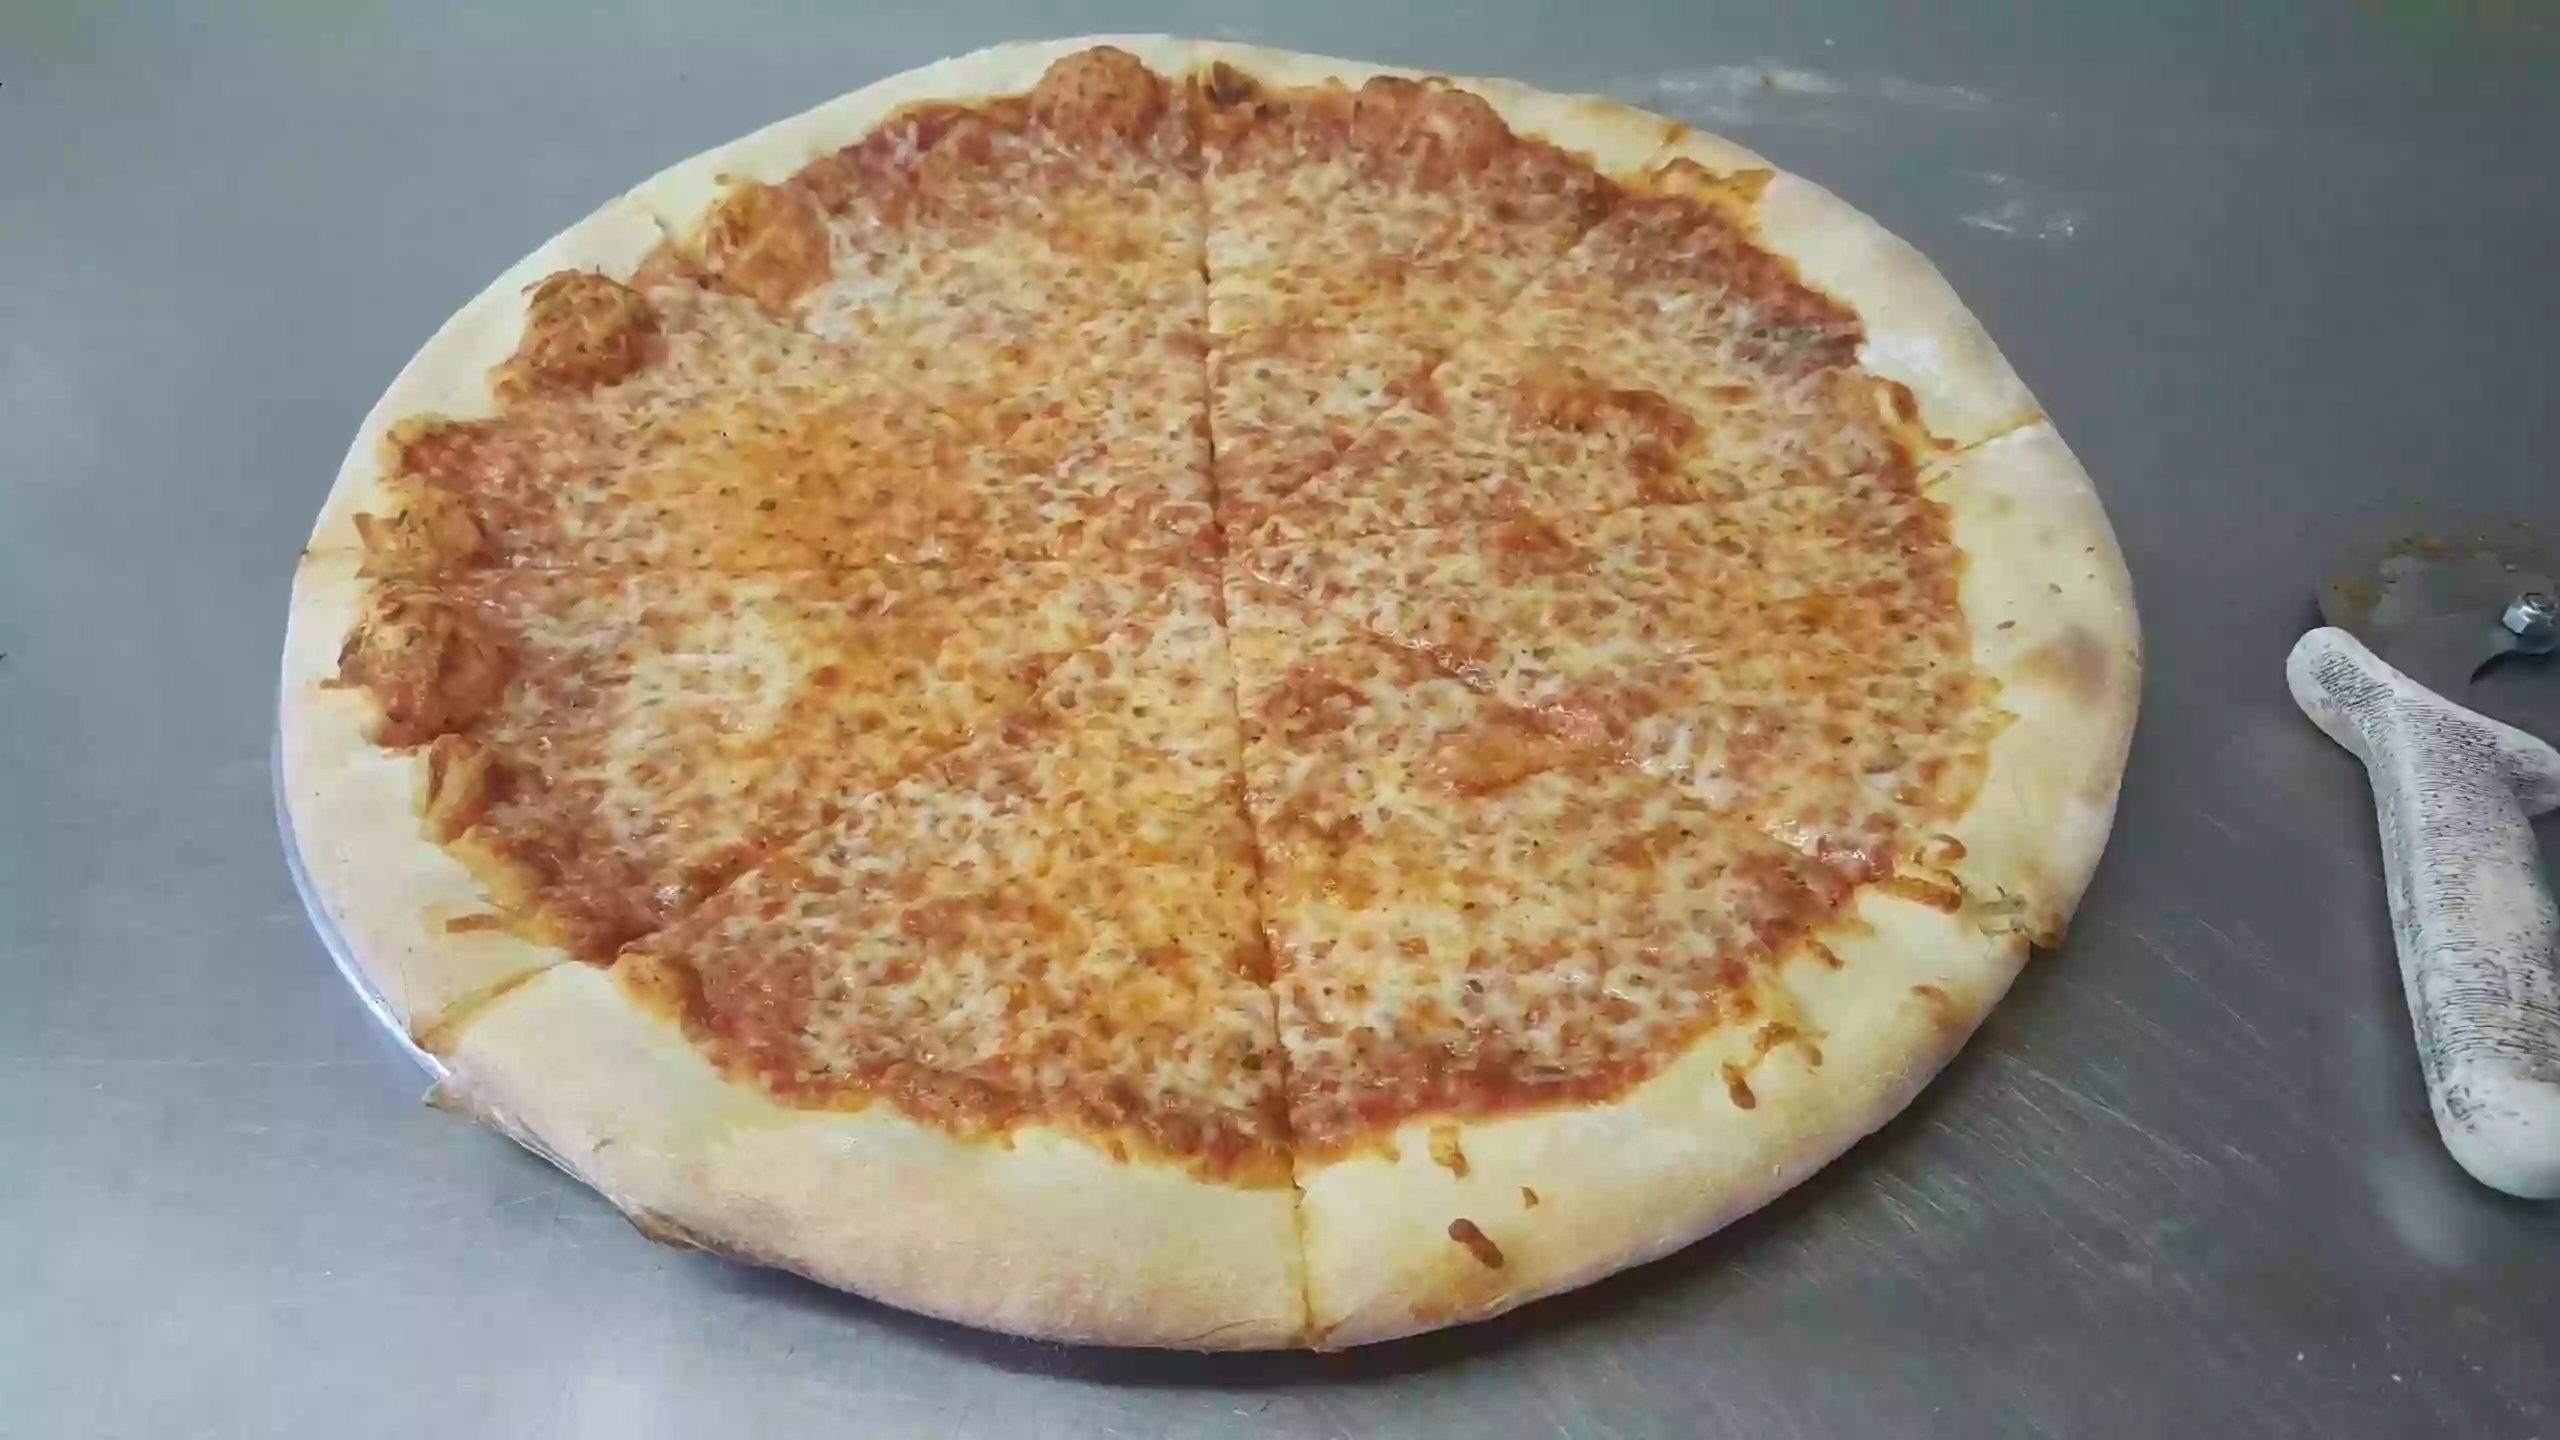 Diorio's Pizza